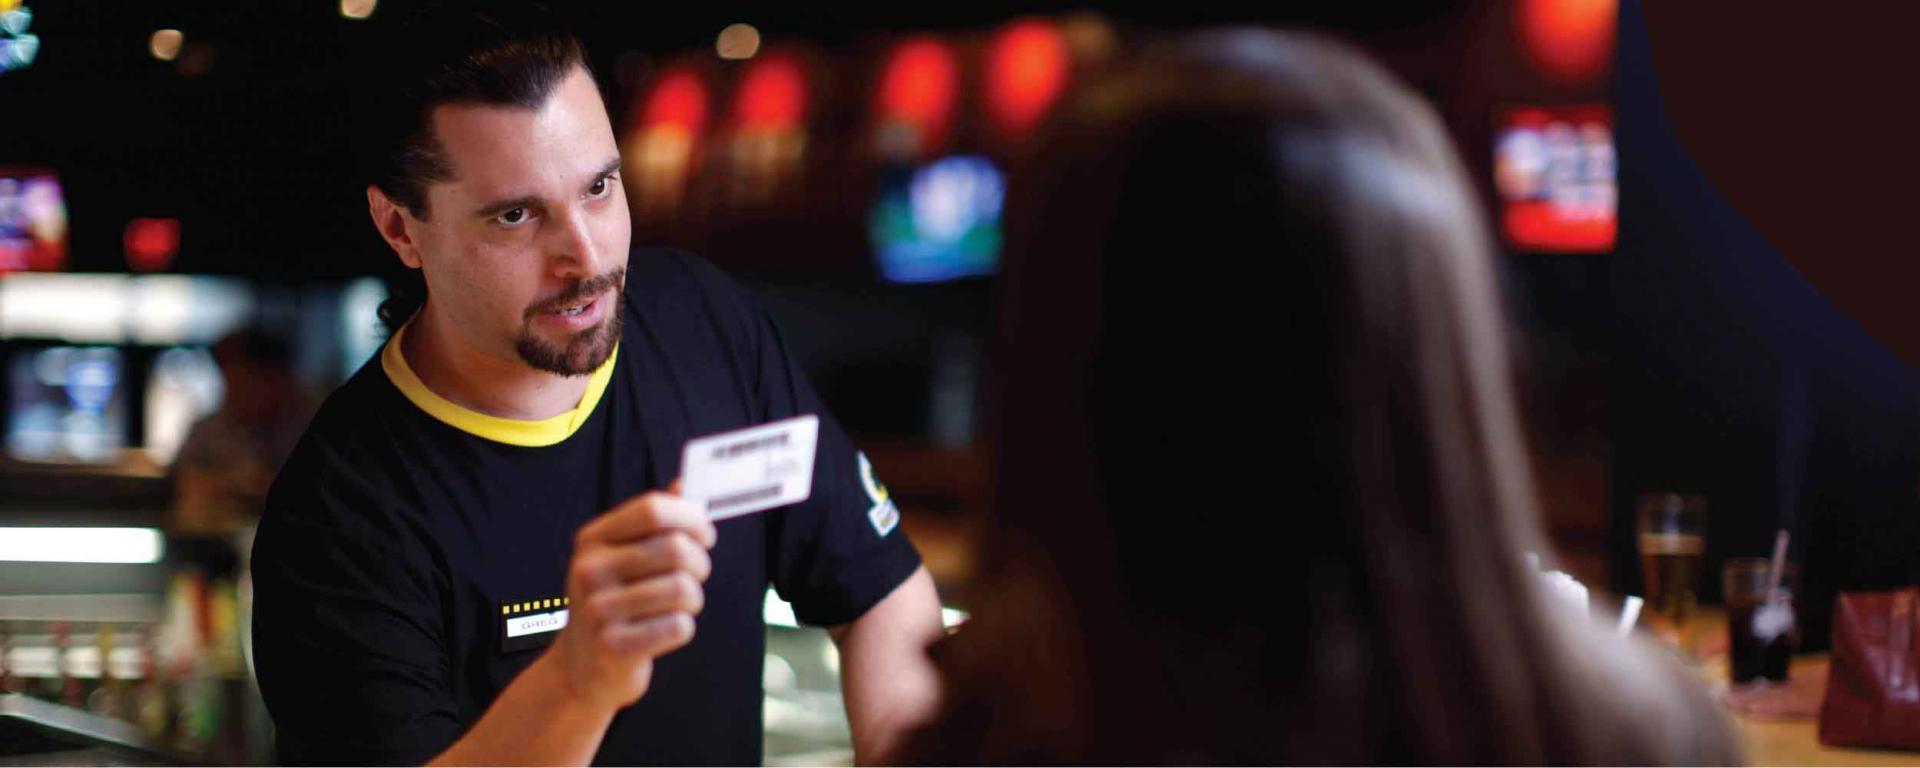 man at bar reviewing ID